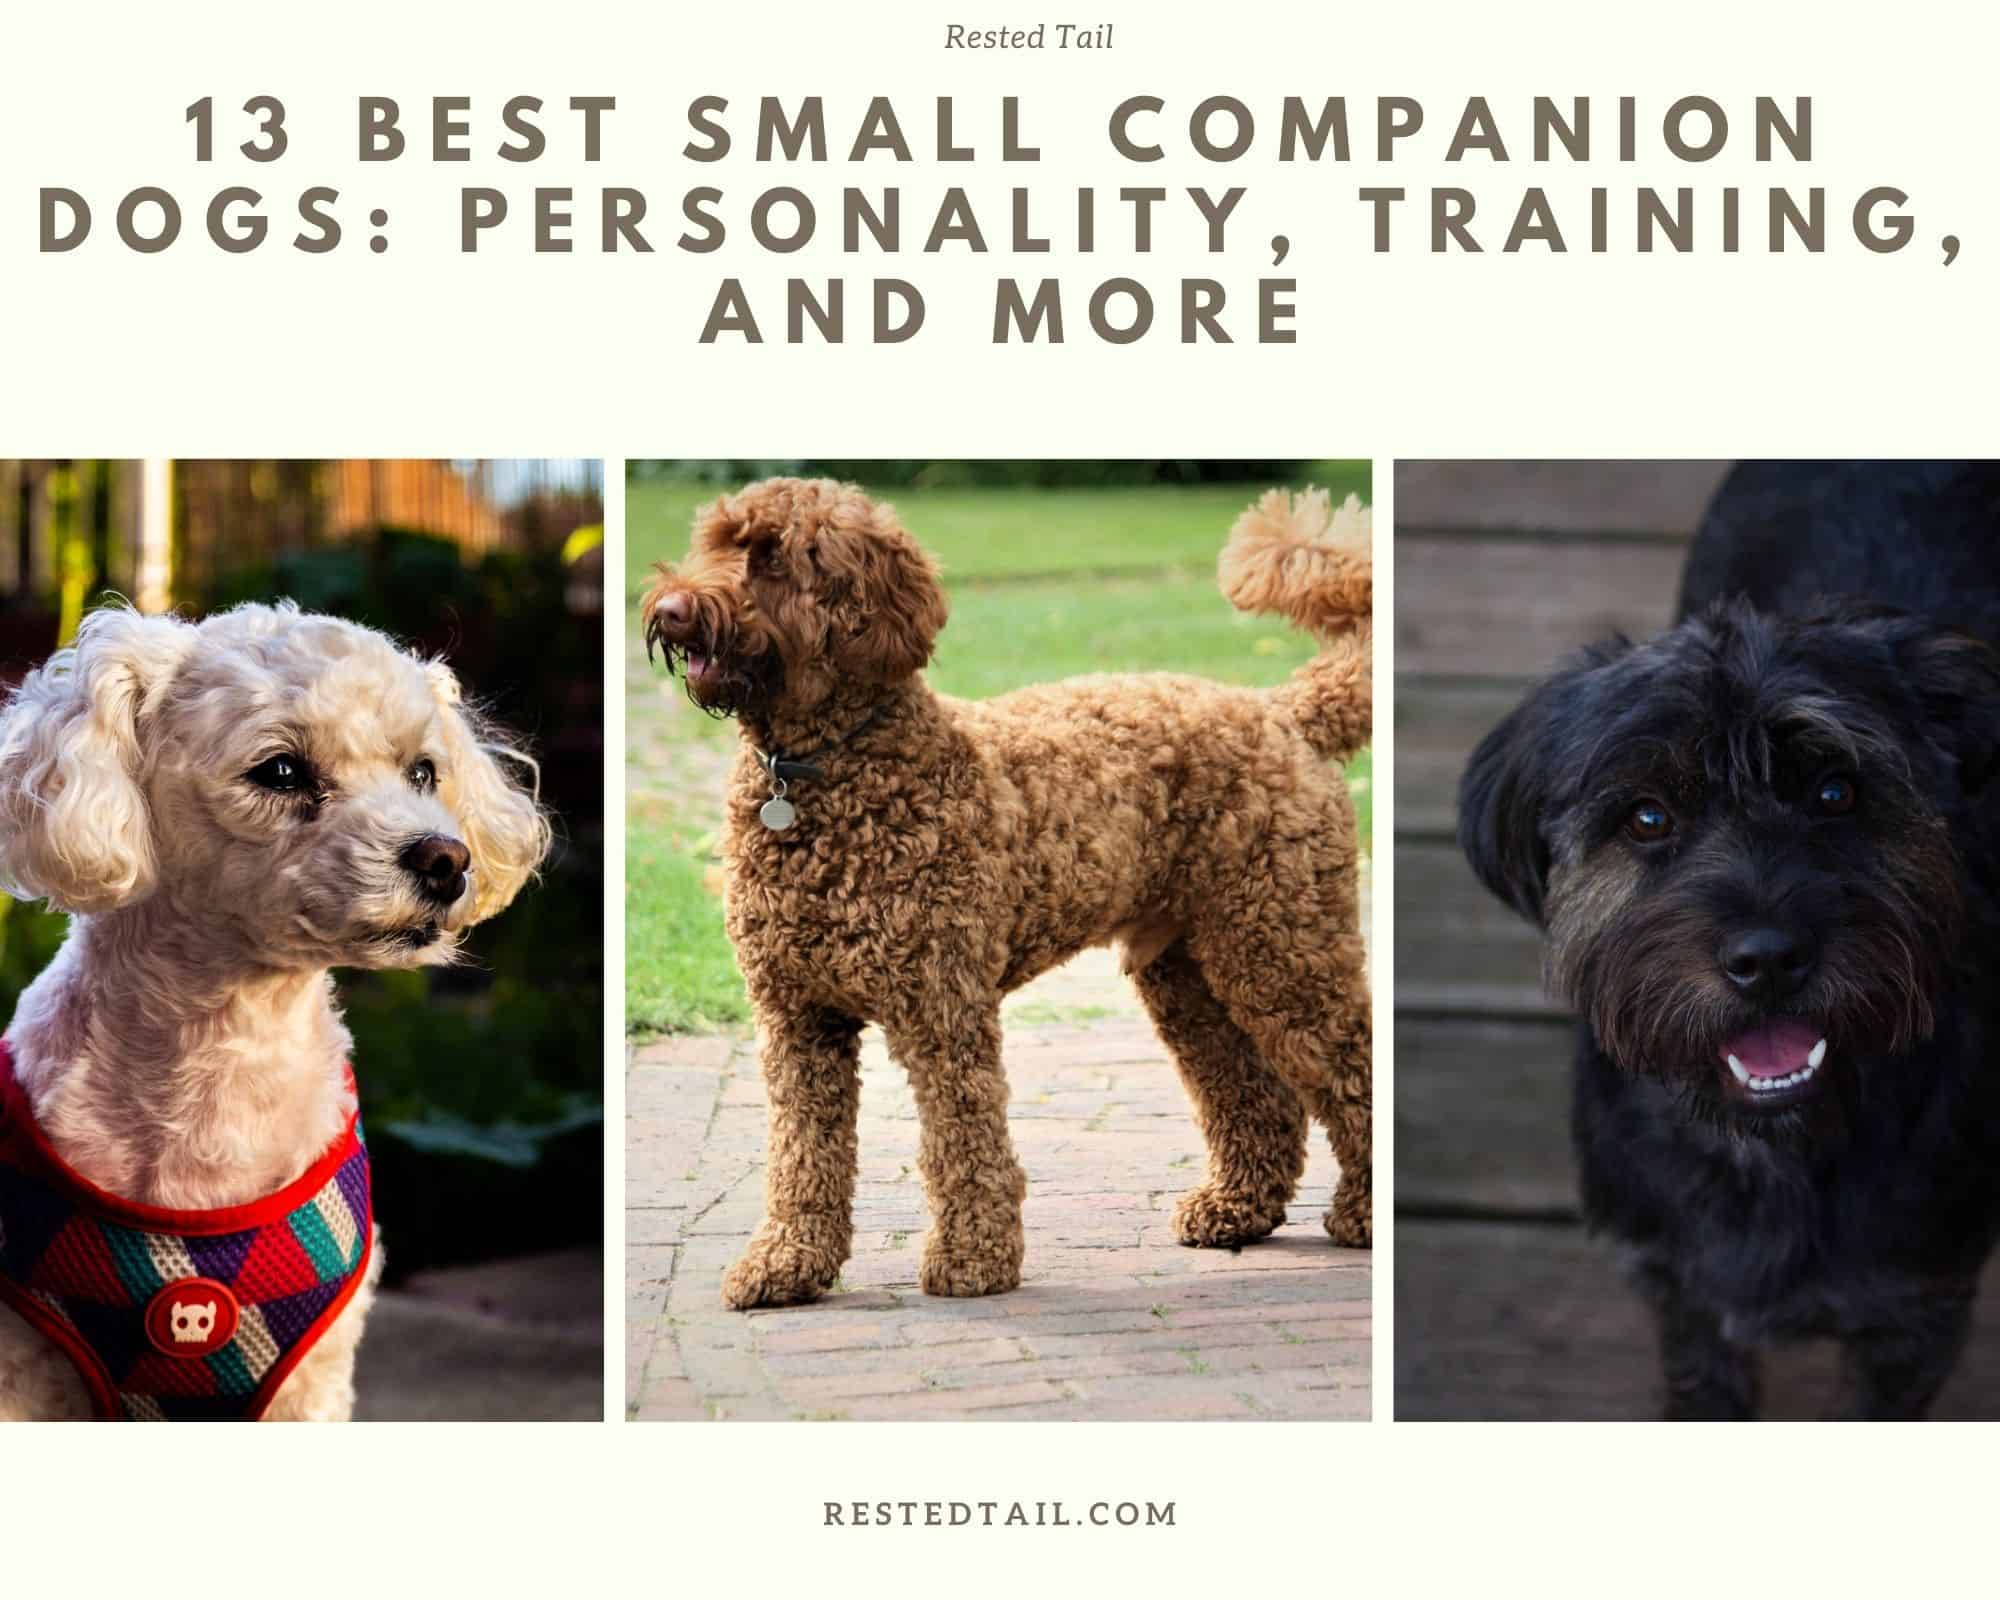 Small companion dogs